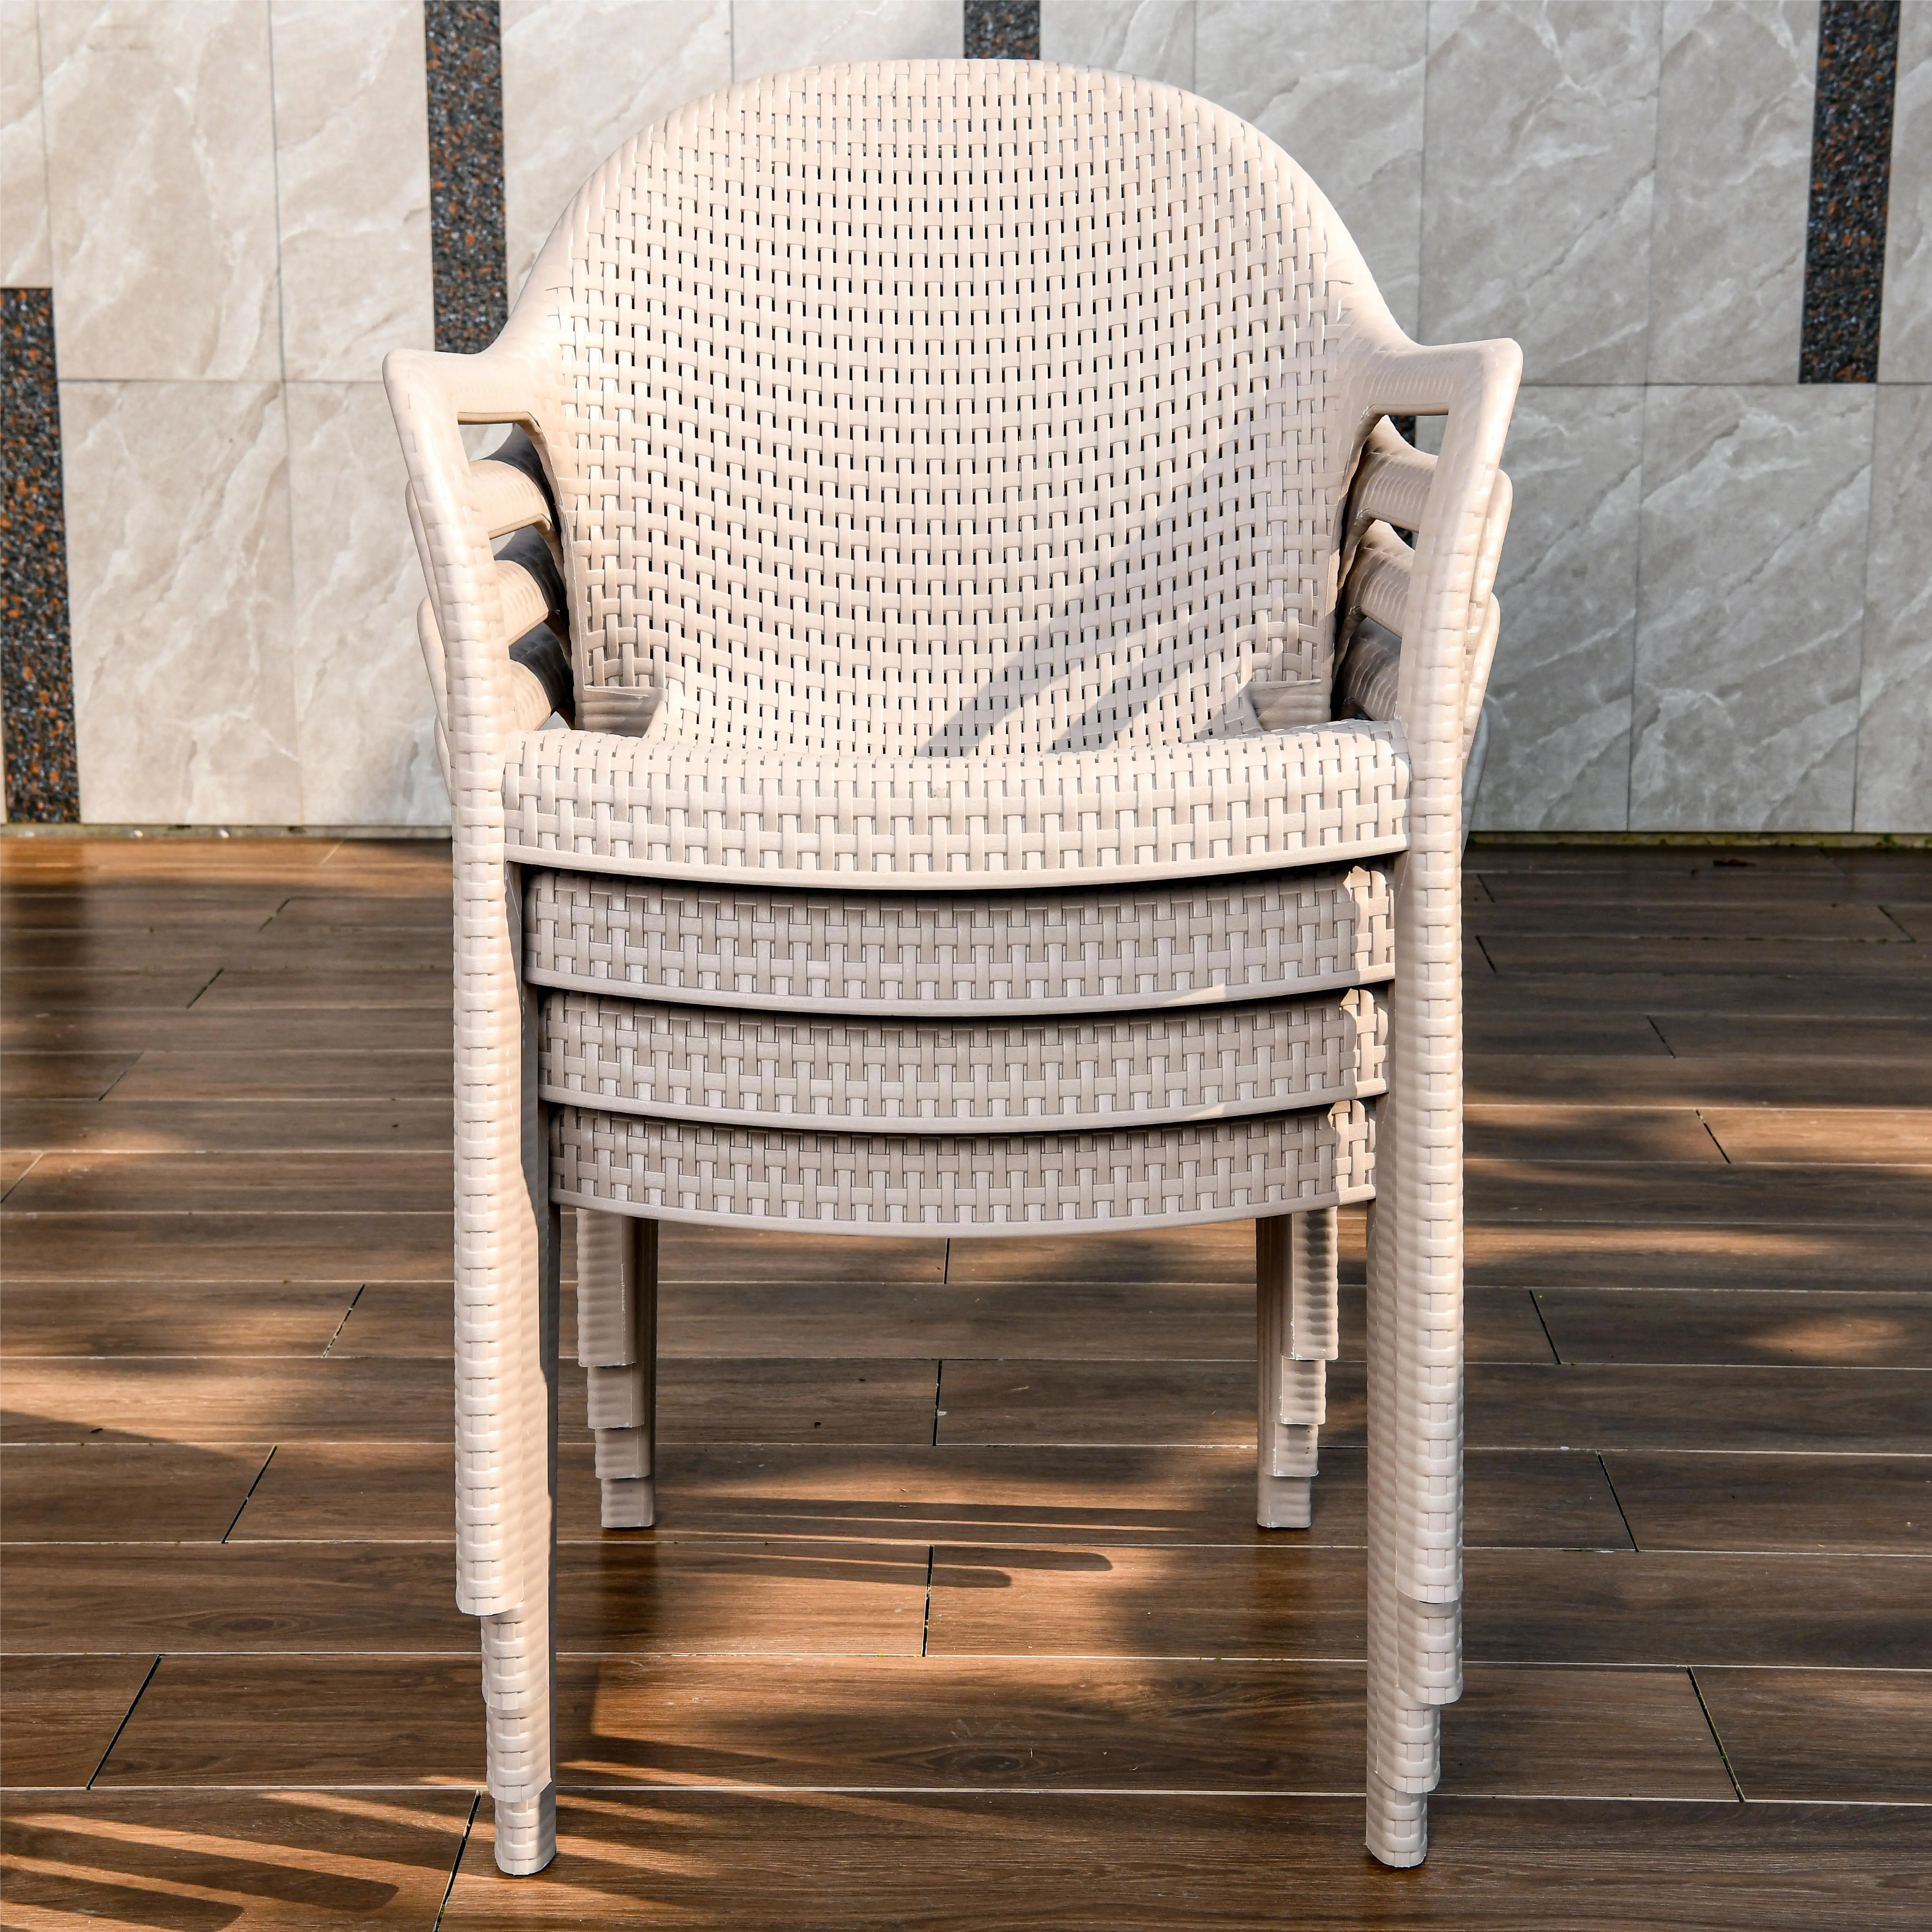 HUAHONG 4+1 günstiges muster werksverkauf PVC kreuzform rattan stuhl outdoor indoor wasserdicht garten esszimmer möbel set